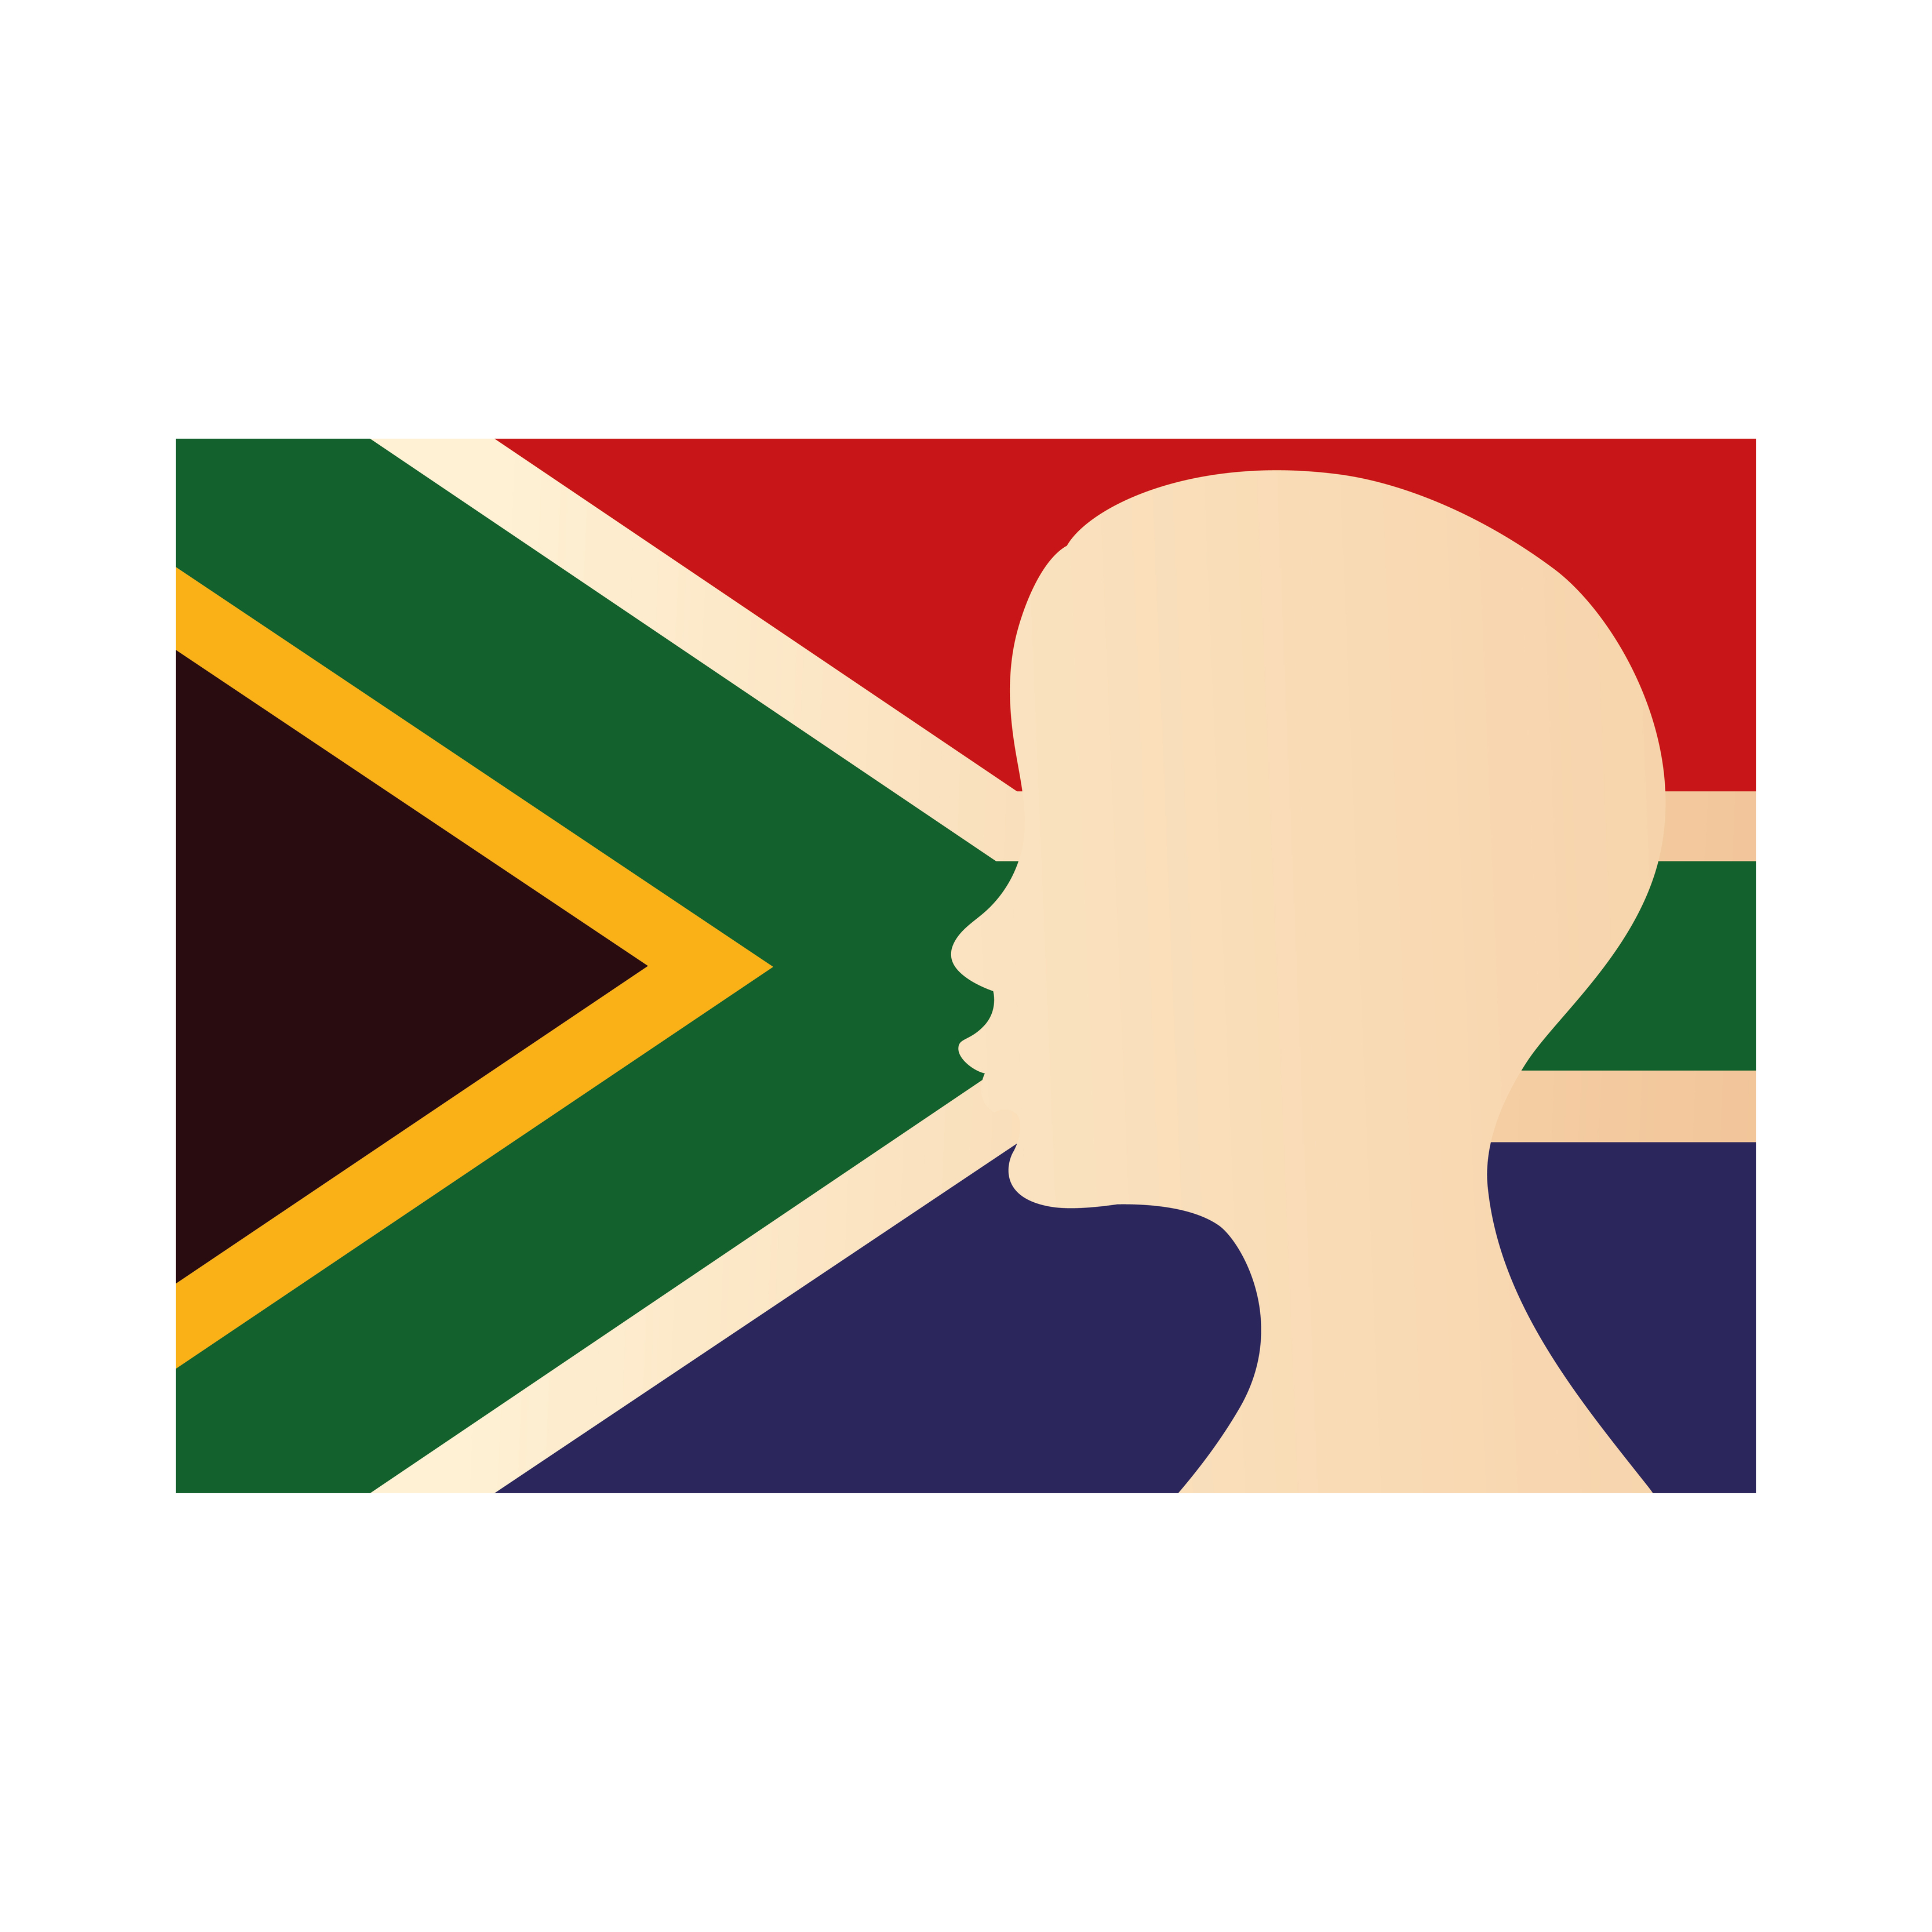 bouwer Kano Oh jee vlag van zuid-afrika met silhouet persoon 4058642 - Download Free Vectors,  Vector Bestanden, Ontwerpen Templates